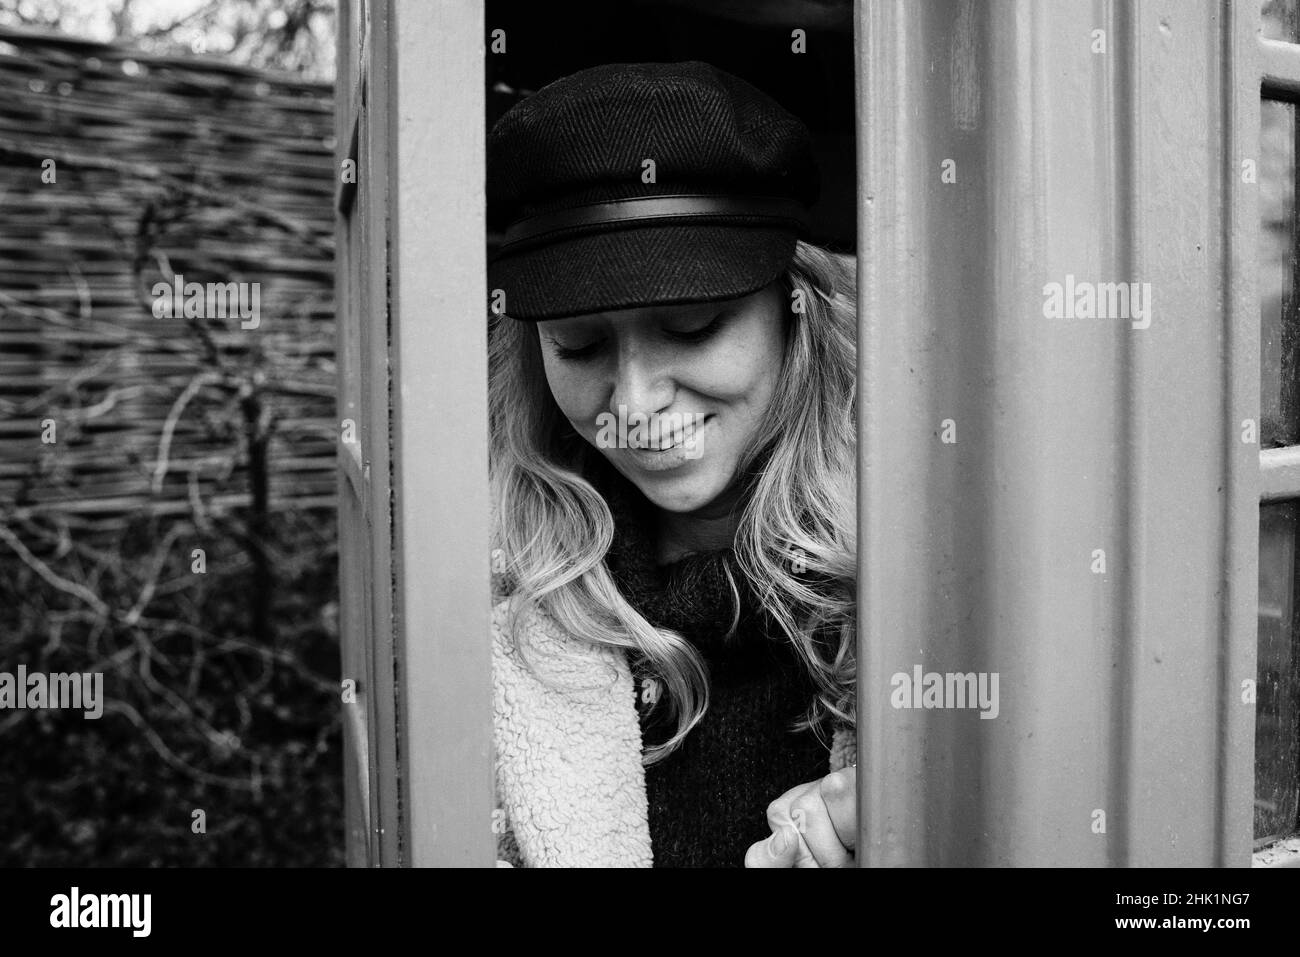 Portrait noir et blanc d'une femme dans un coffret téléphonique anglais Banque D'Images